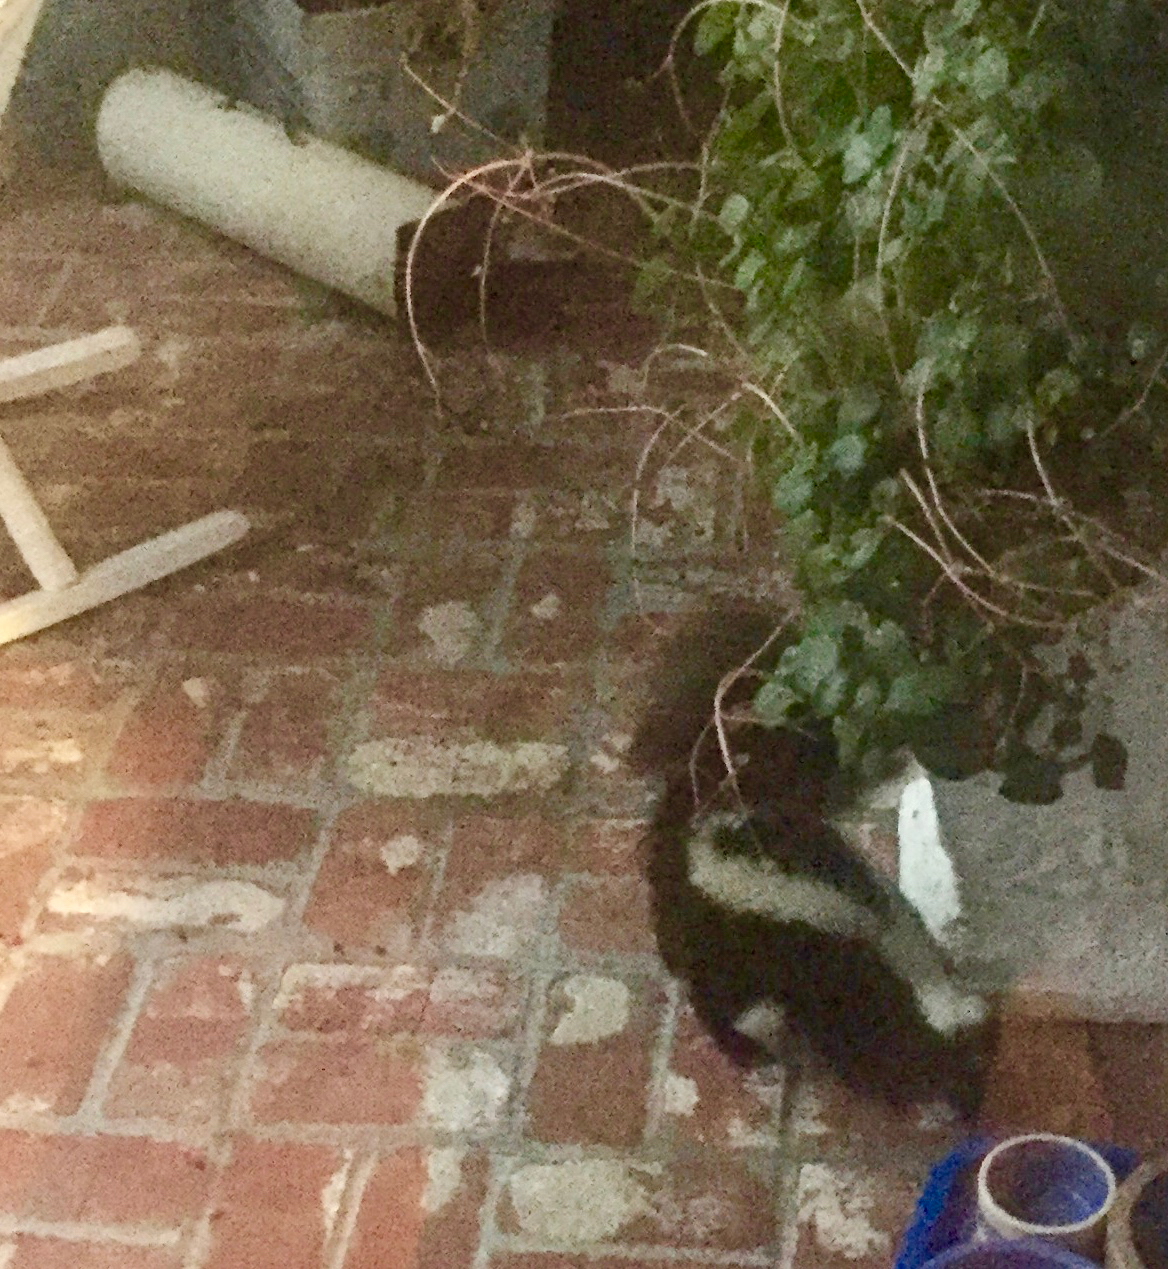 skunk on patio.jpg